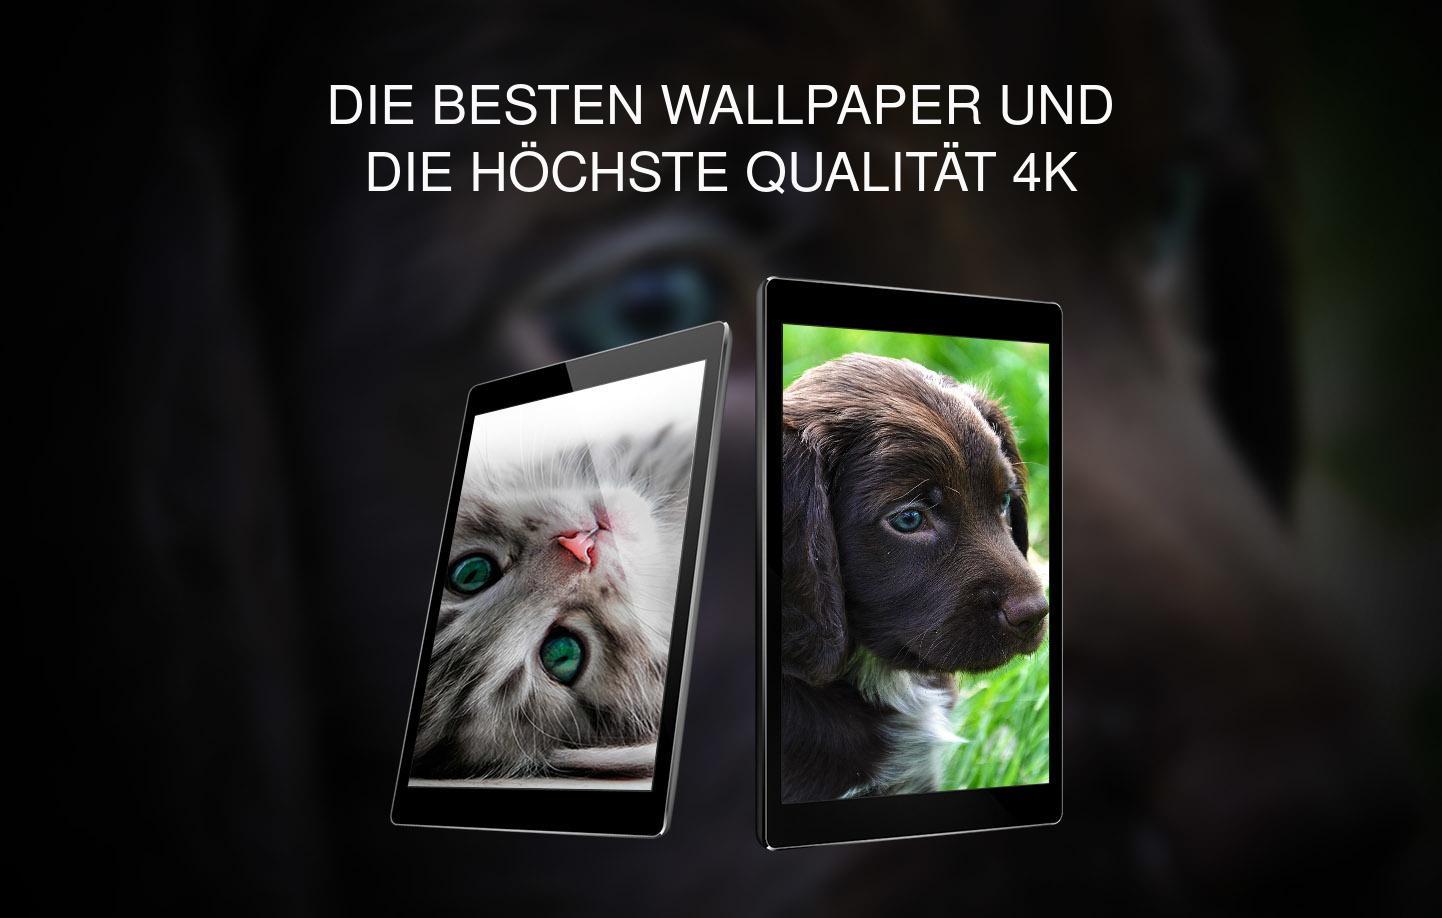 Hintergrunde Mit Sussen Tieren Fur Android Apk Herunterladen